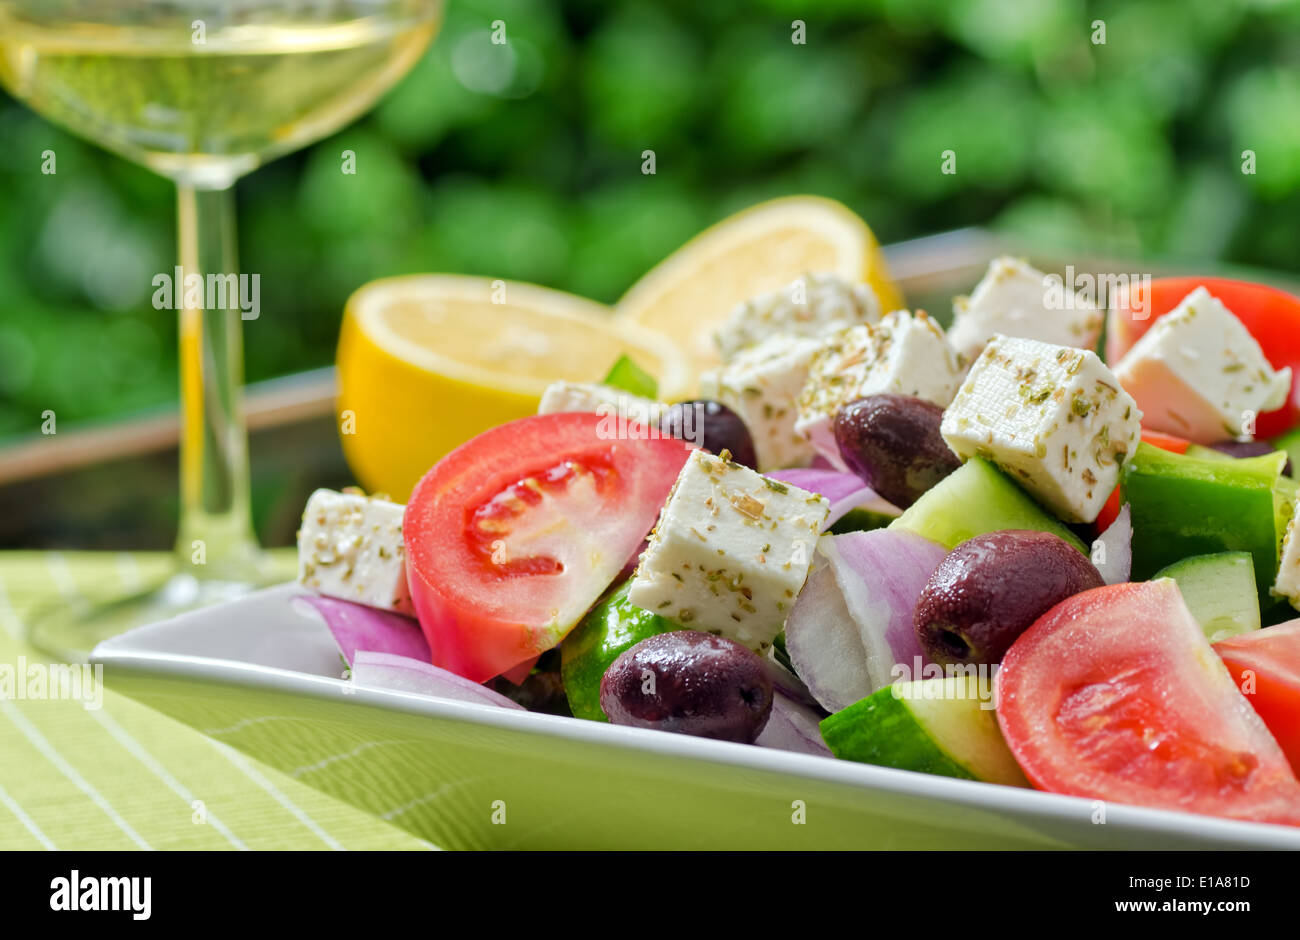 Ein Sommer frischen griechischen Salat mit Tomaten, Gurken, Paprika, rote Zwiebel, Kalamata Oliven und Feta-Käse. Stockfoto